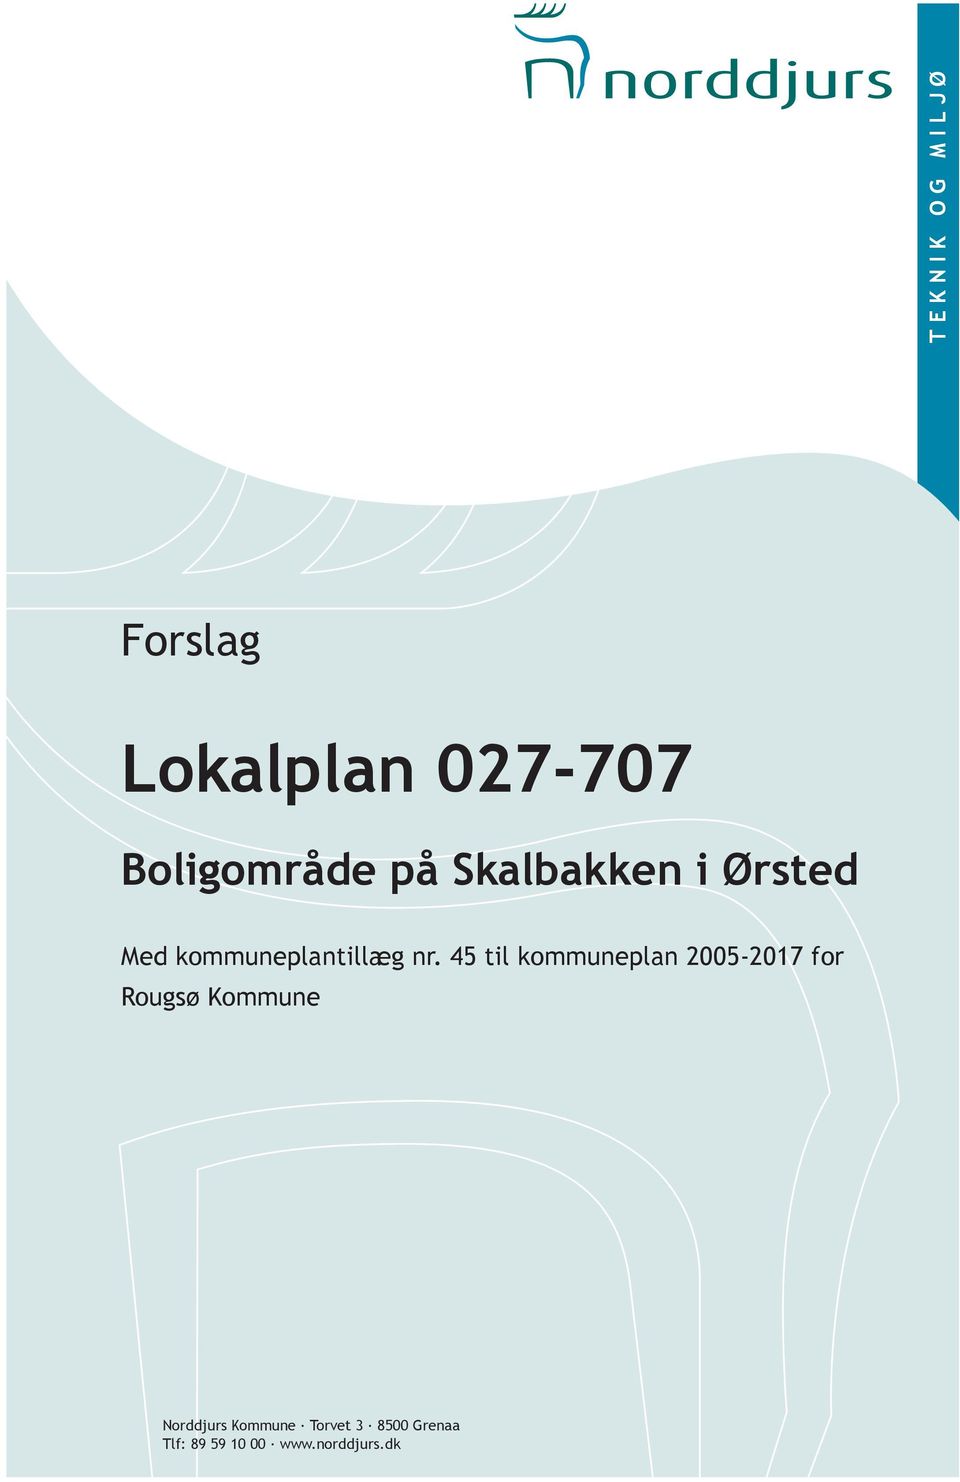 45 til kommuneplan 2005-2017 for Rougsø Kommune